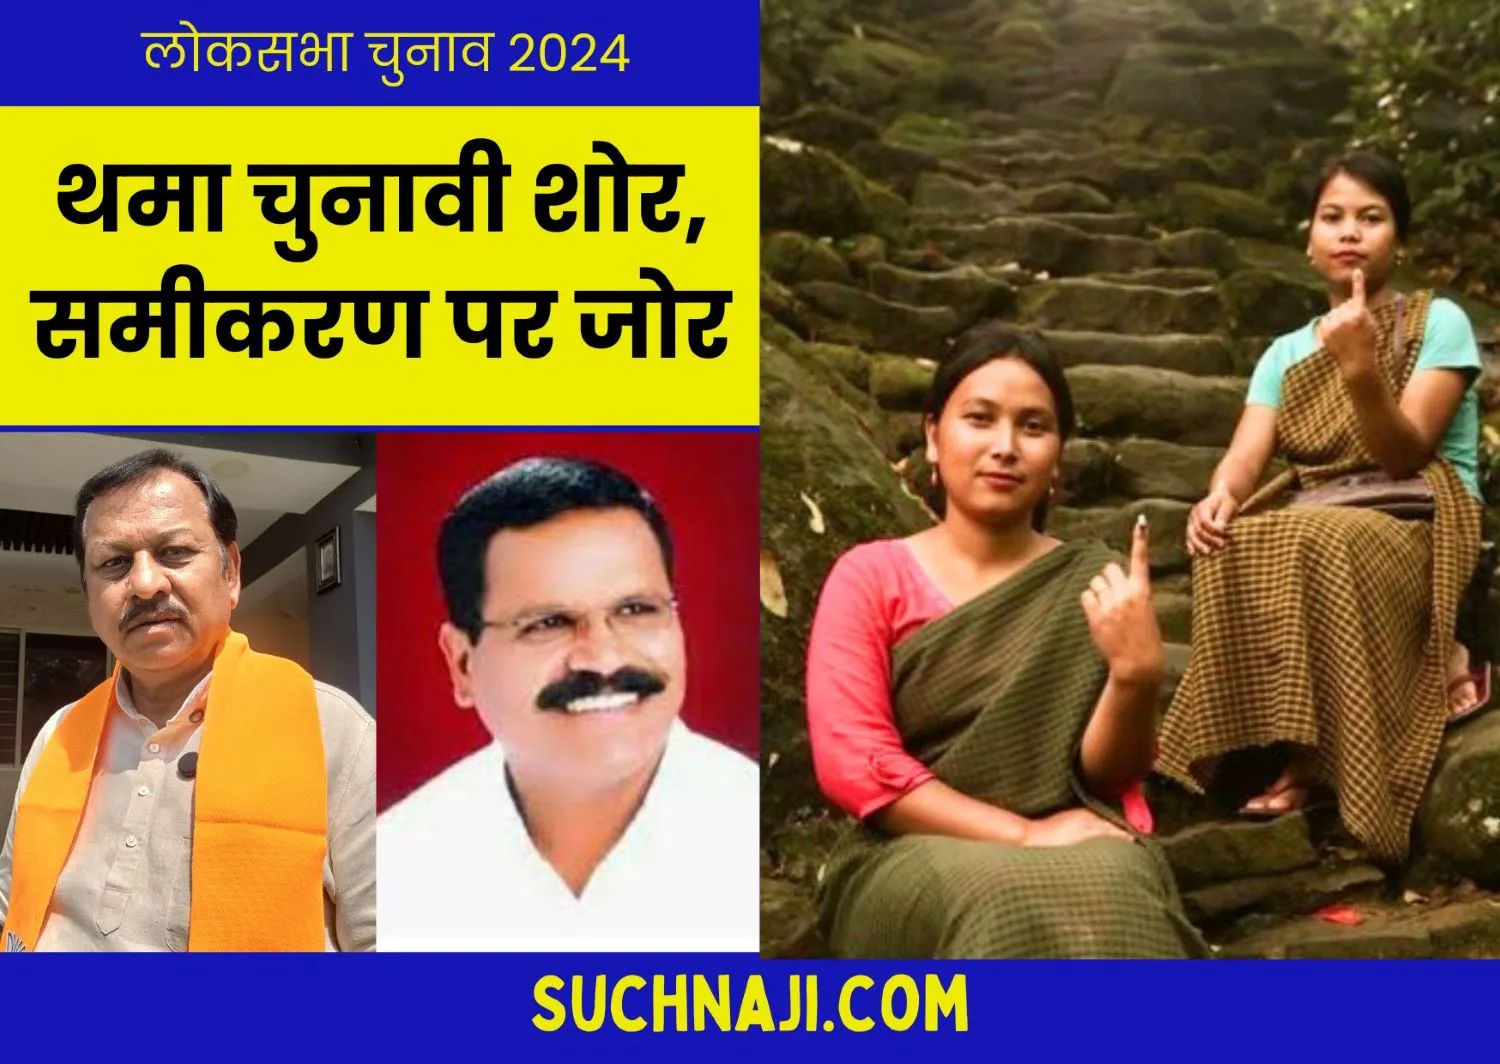 Lok Sabha Election 2024: थमा चुनावी शोर, छत्तीसगढ़ के सबसे साक्षर जिला दुर्ग में पुरुषों से ज्यादा महिला वोटर्स, राजेंद्र साहू-विजय बघेल में सीधी टक्कर